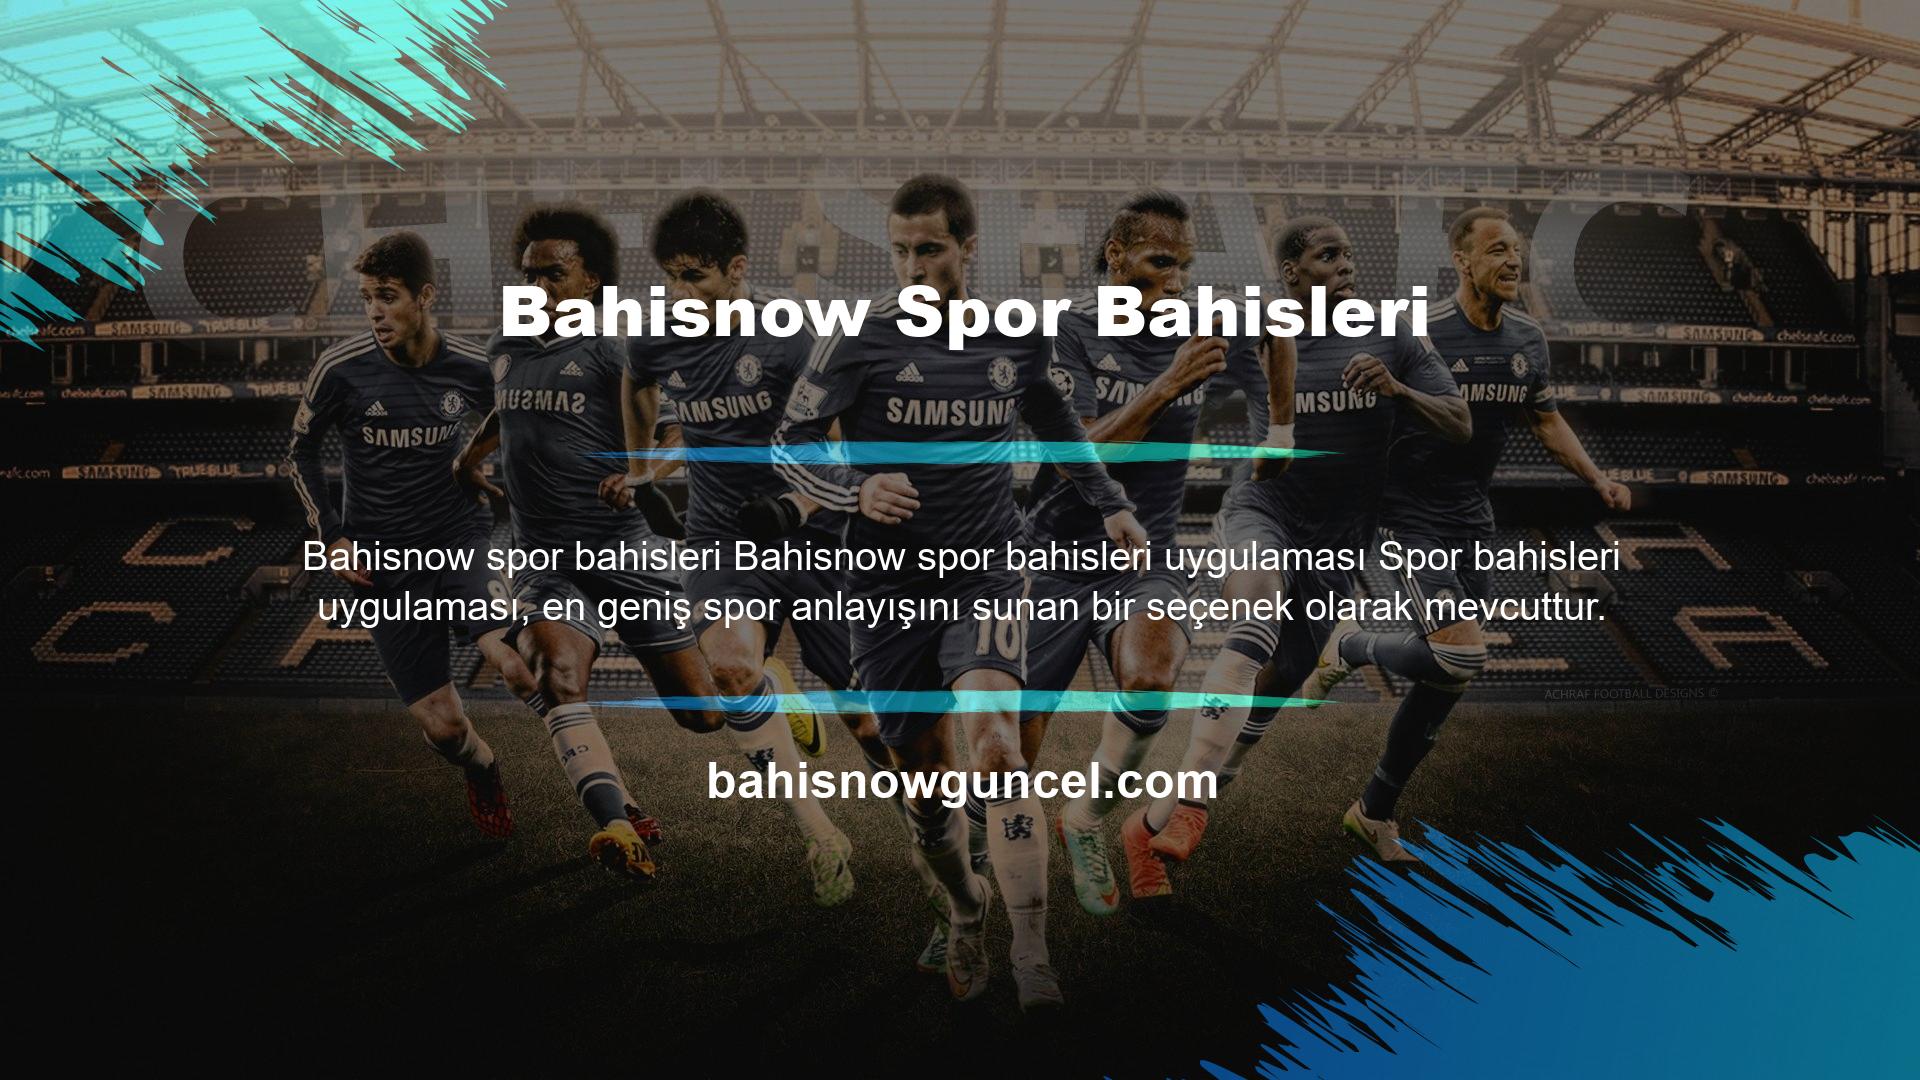 Bahisnow spor bahisleri uygulaması, üyelerine maç öncesi spor bahisleri yapma imkanı sunar